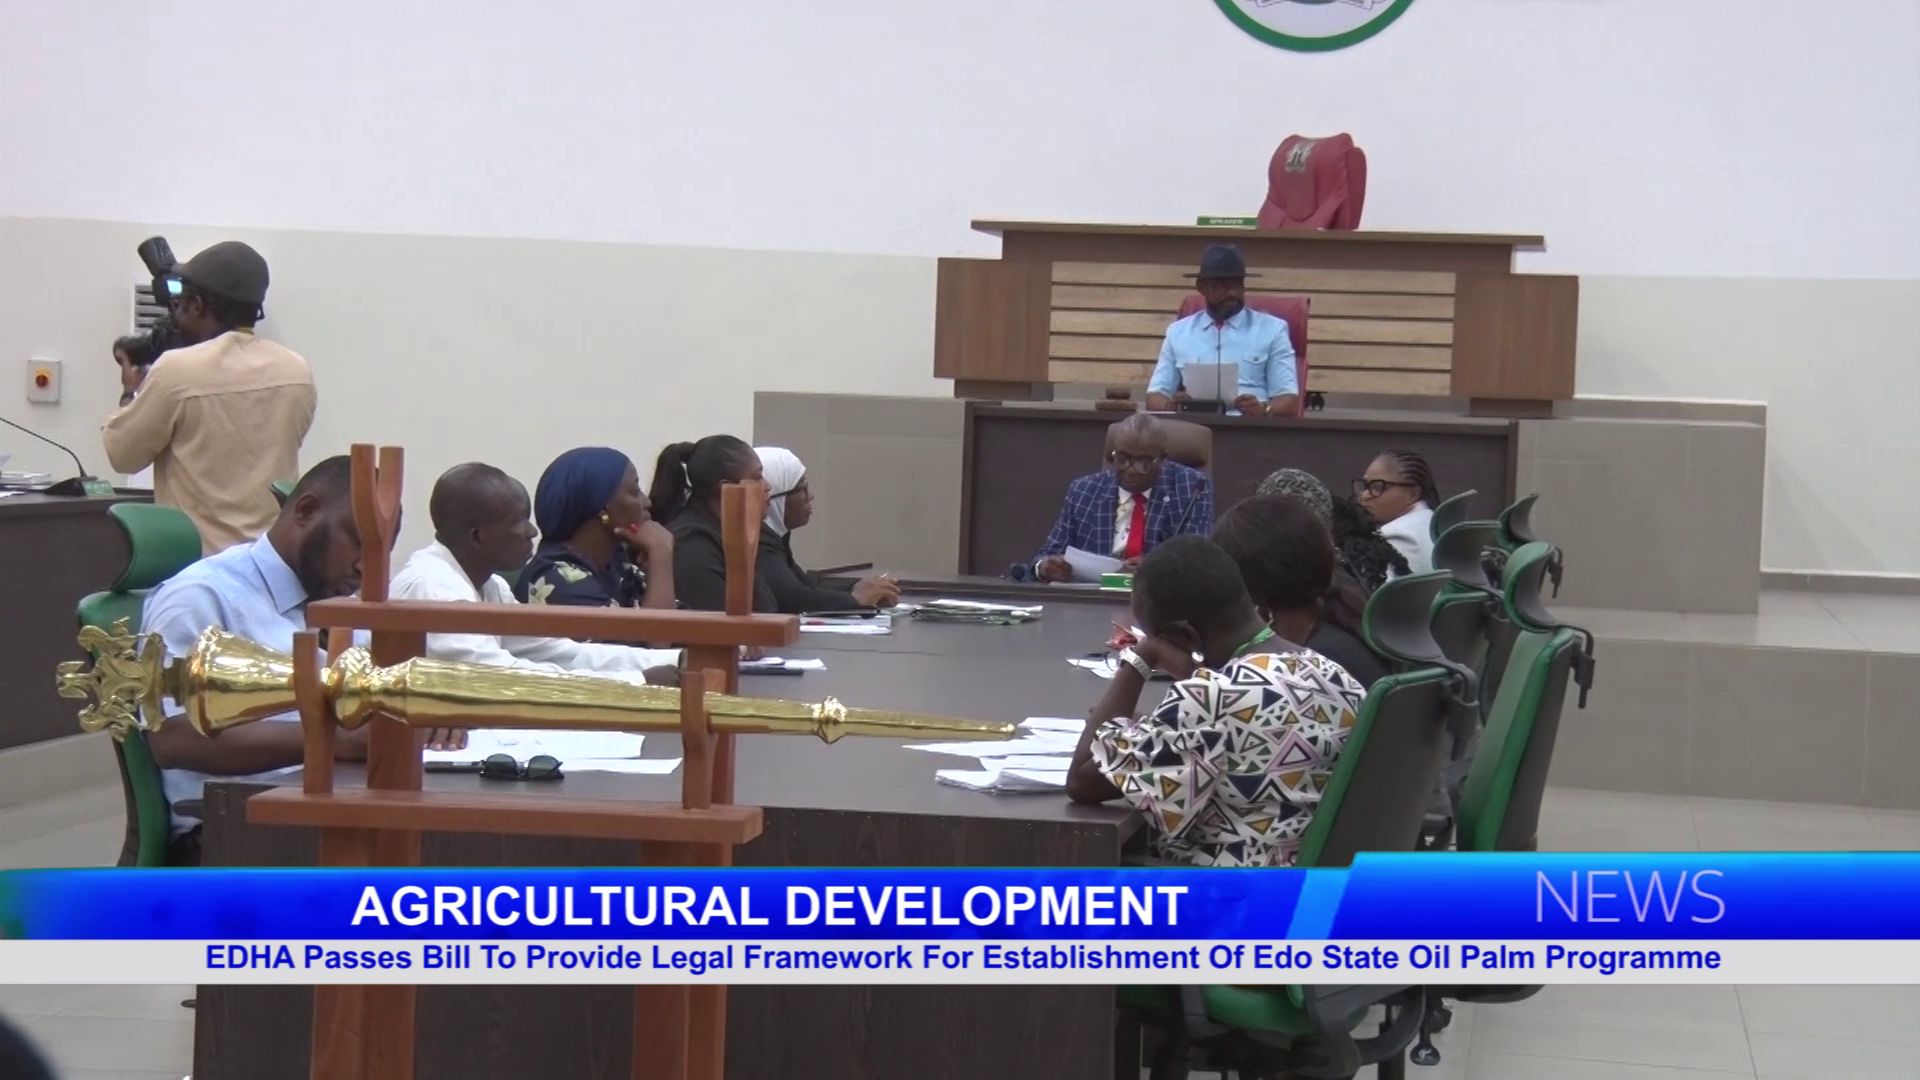 EDHA Passes Bill To Provide Legal Framework For Establishment Of Edo State Oil Palm Programme